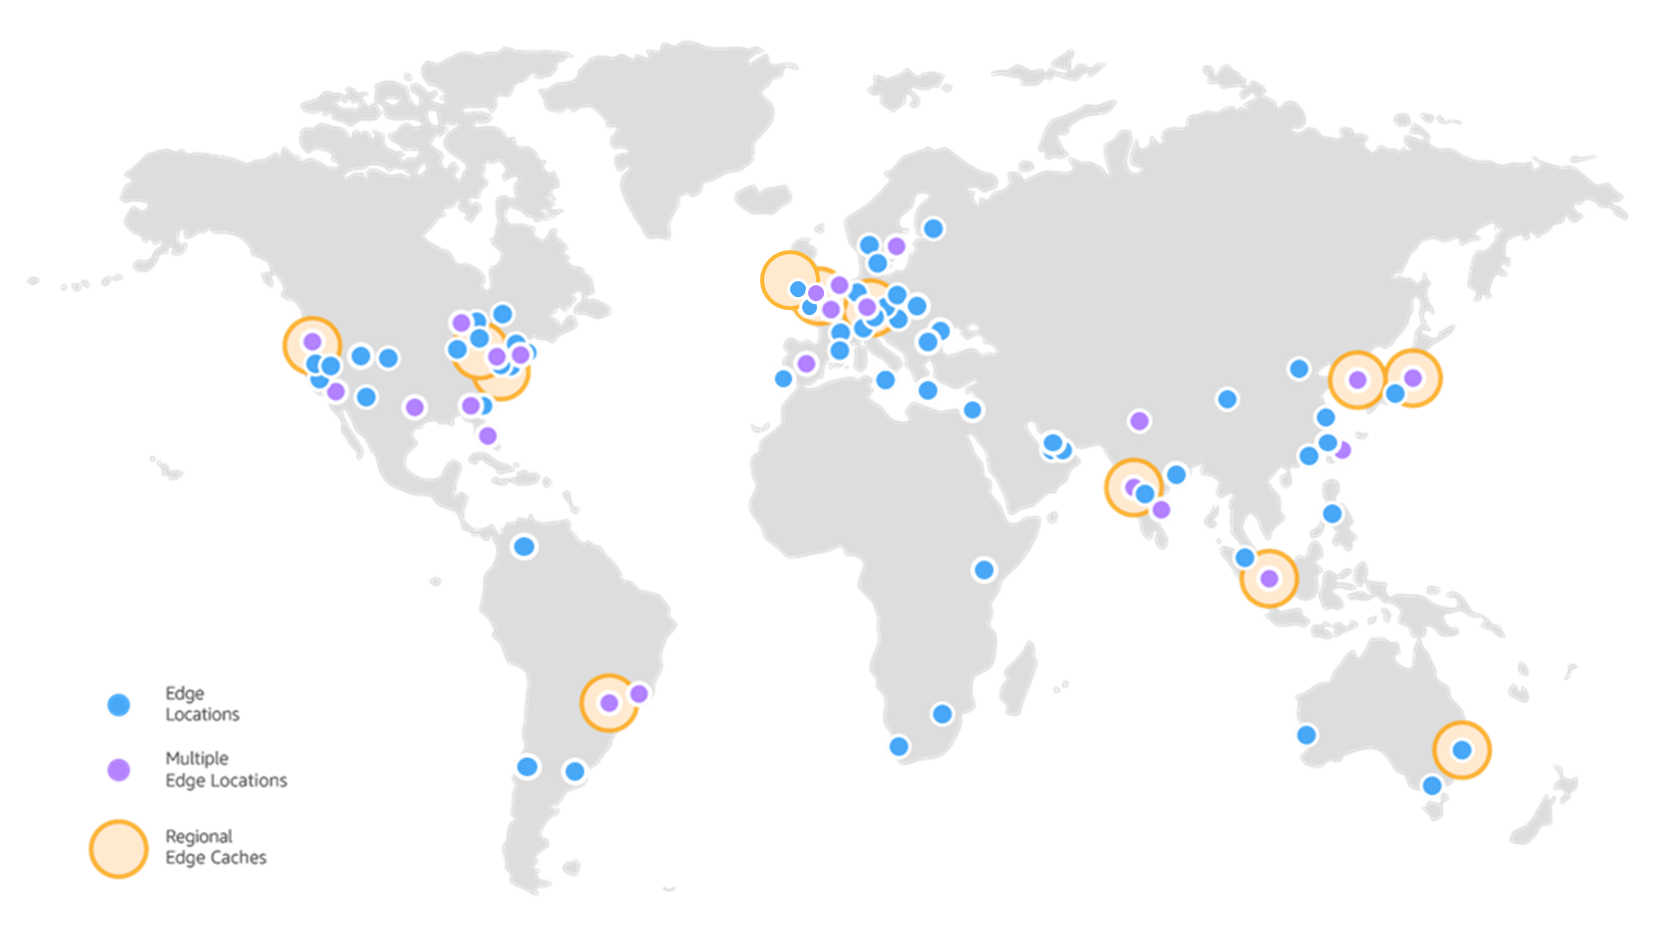 AWS 공식 블로그에 있는 전세계의 Edge Location 지도. 파란 점이 Edge Location이다.  